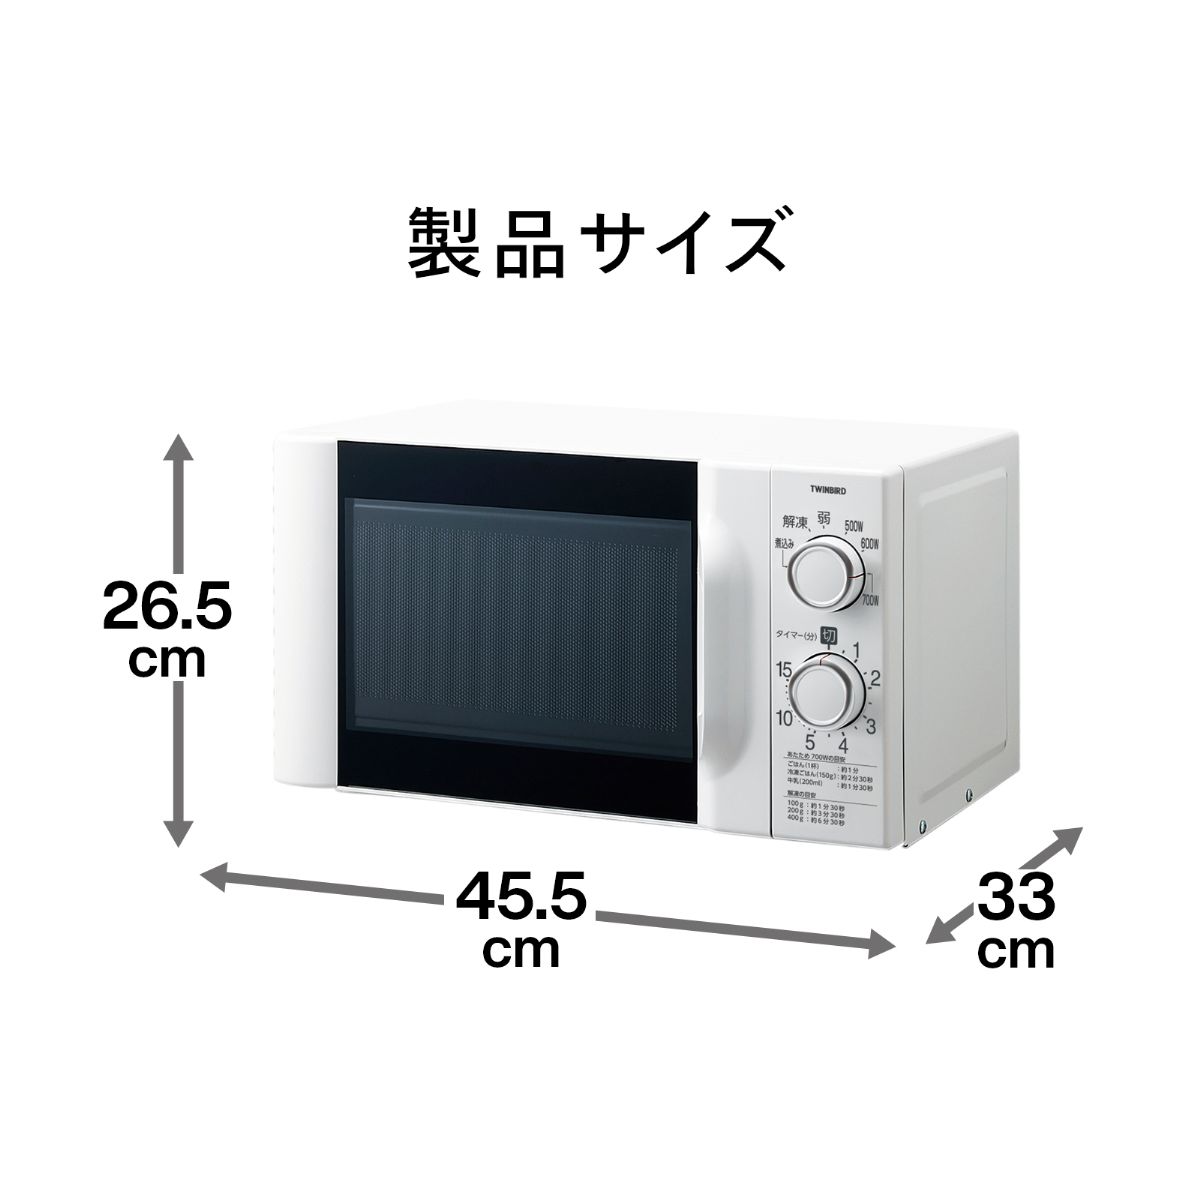 ツインバード 電子レンジ 60hz 西日本専用 DR-D419W6